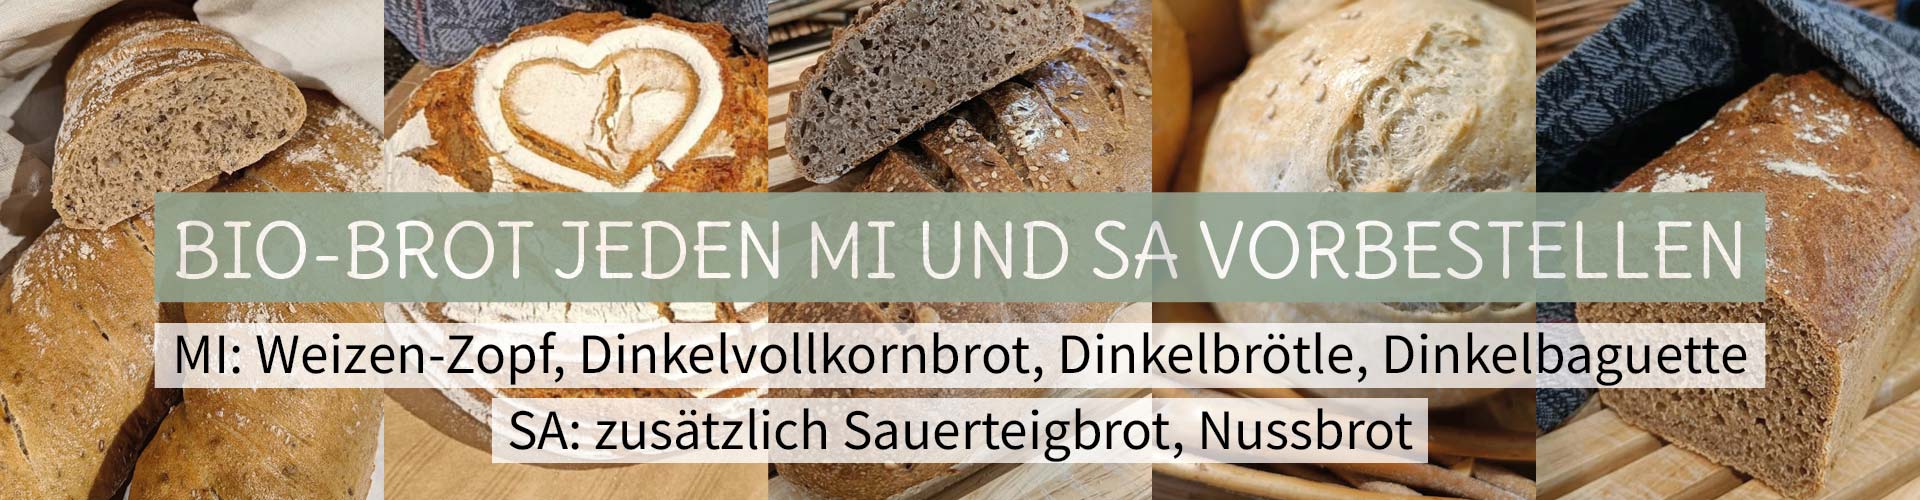 Bio-Brot auf Bestellung: Jeden Mittwoch und Samstag im Badhus Lingenau. Dinkelbrot, Zopf, Vollkornbrot, Sauerteig